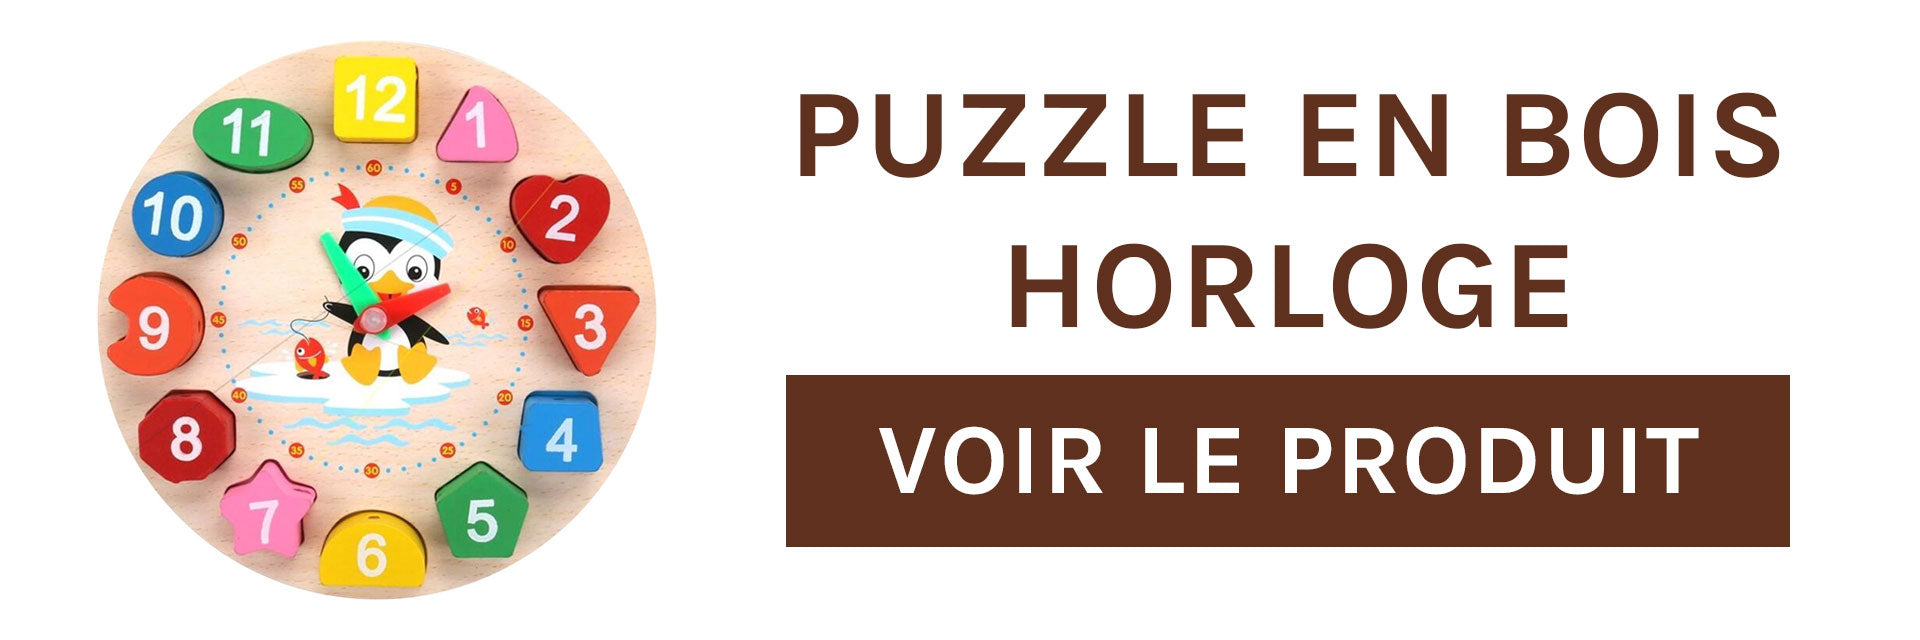 puzzle-en-bois-horloge